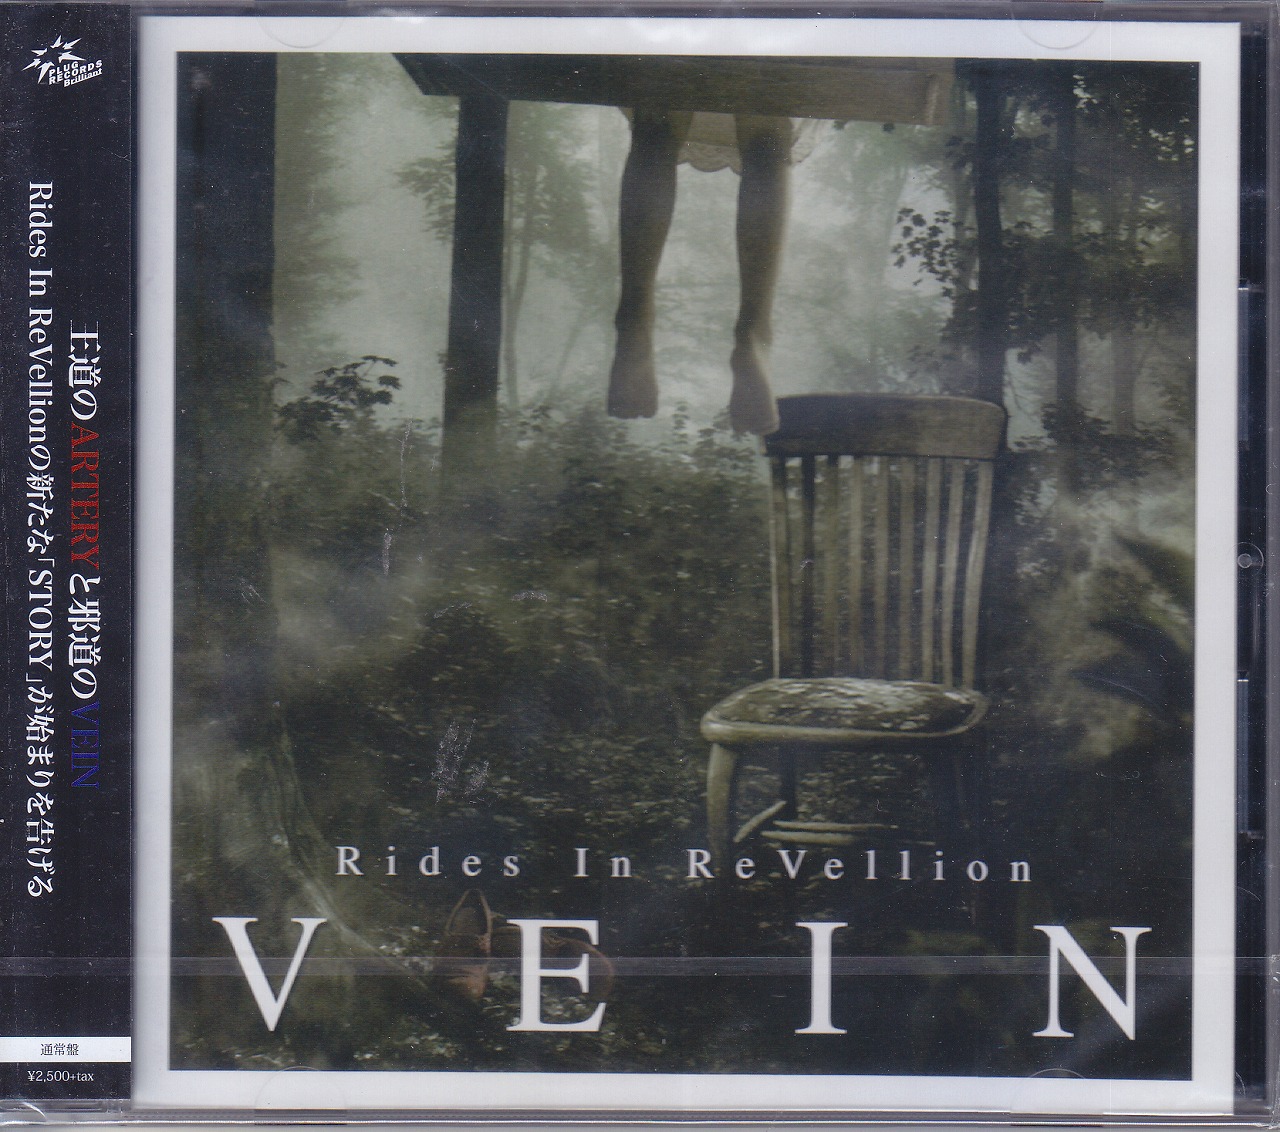 ライズインリベリオン の CD 【通常盤】VEIN